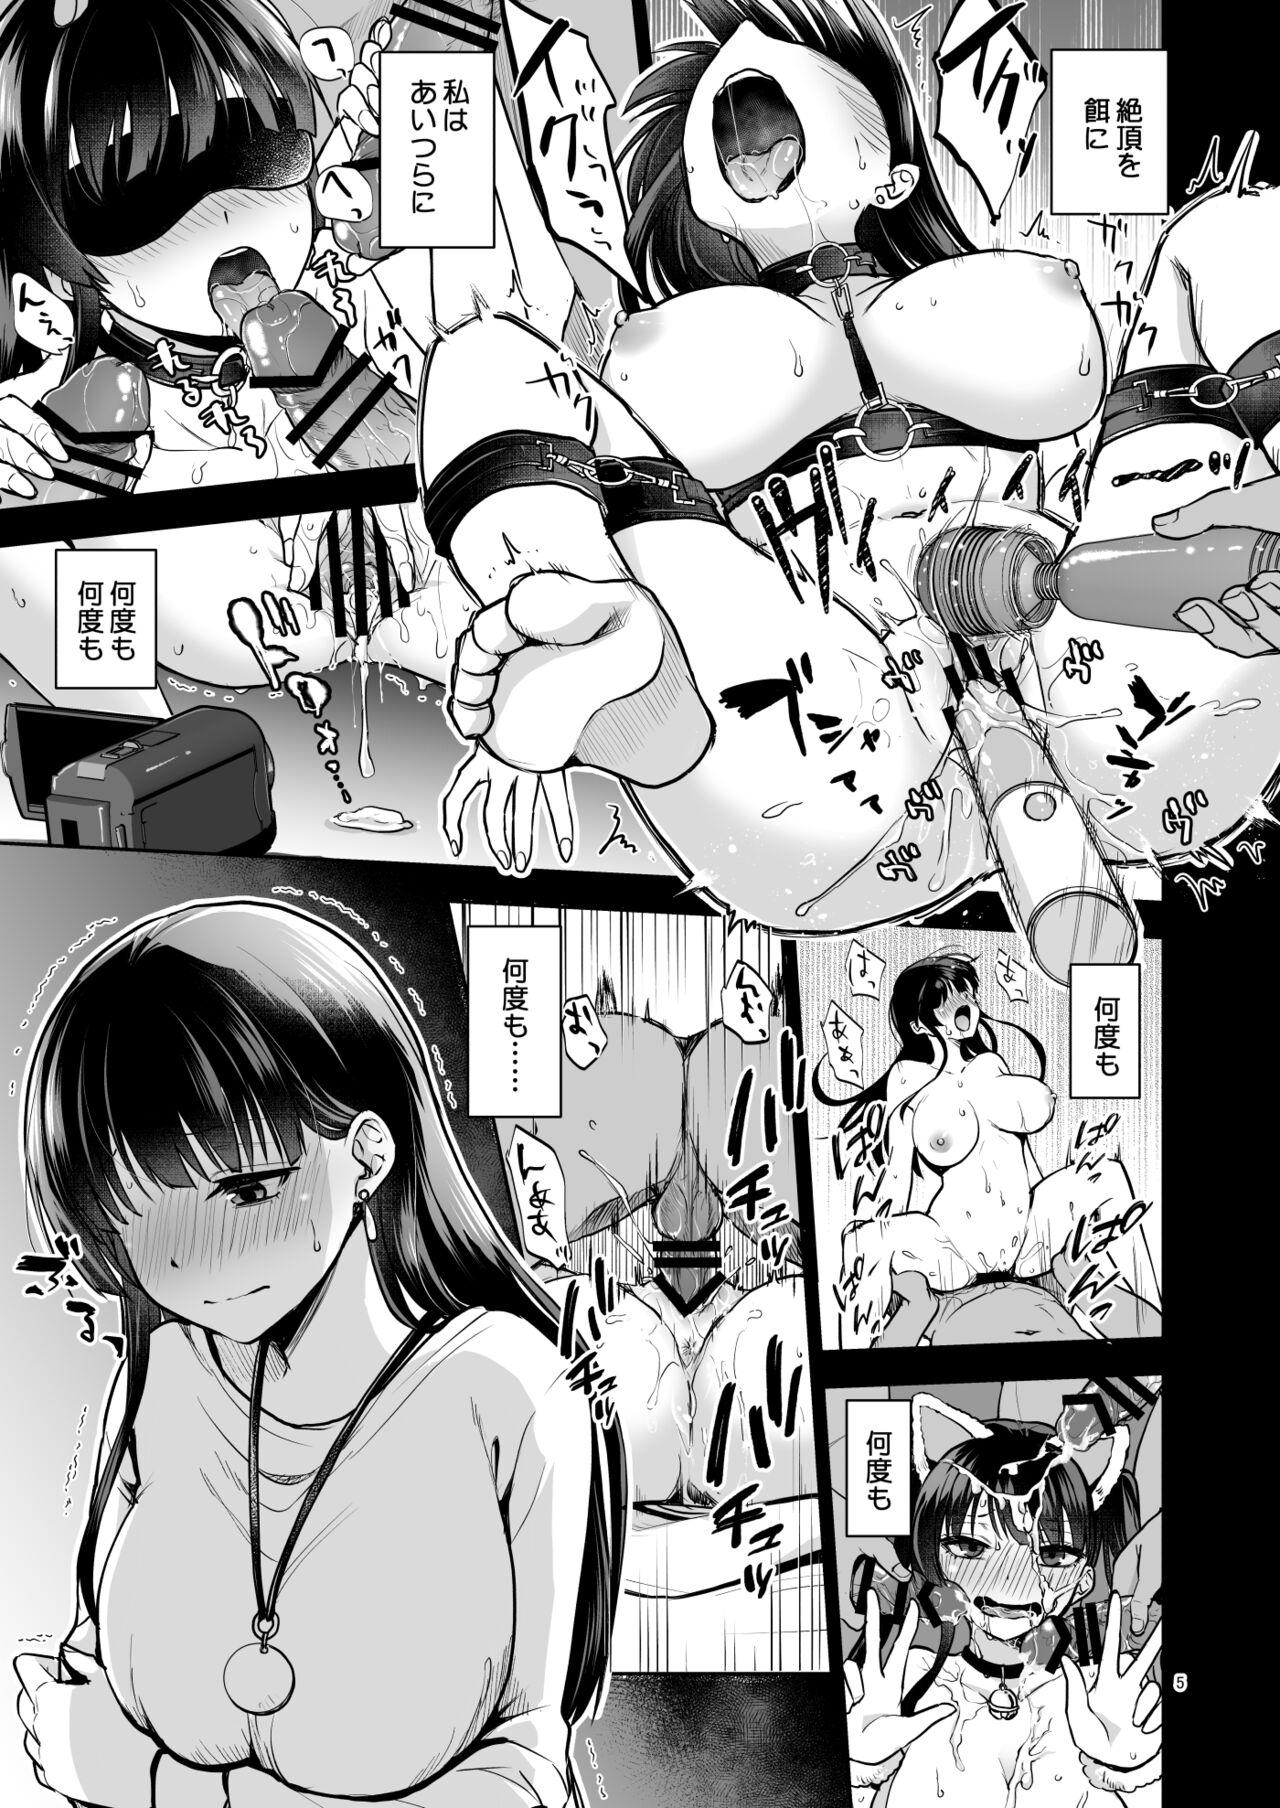 Peluda Omoide wa Yogosareru 2 - Original Amadora - Page 4